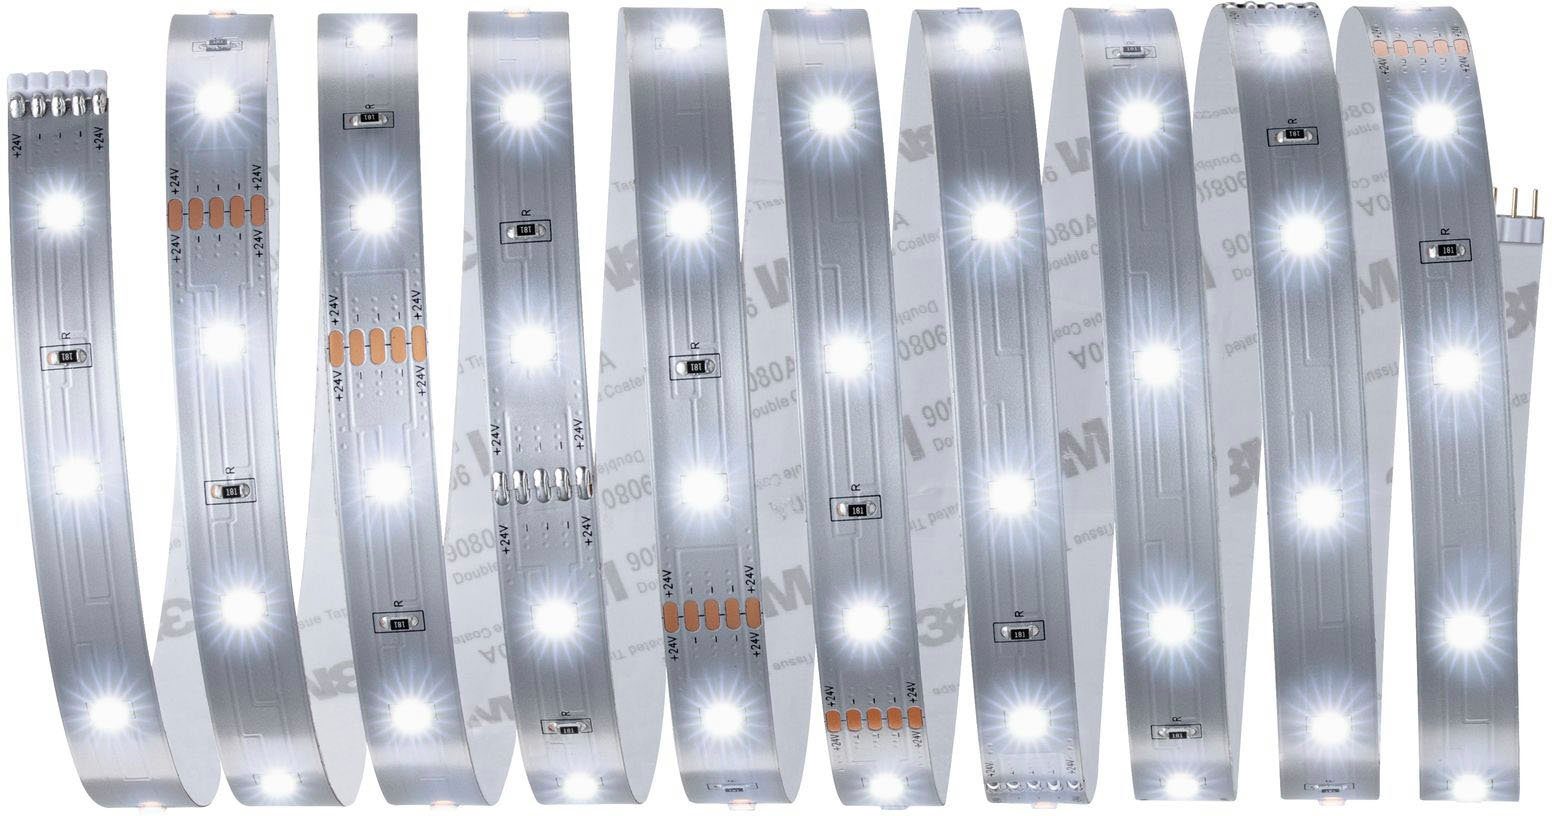 Paulmann LED Stripe MaxLED 250 3m 1-flammig Tageslichtweiß, Basisset unbeschichtet